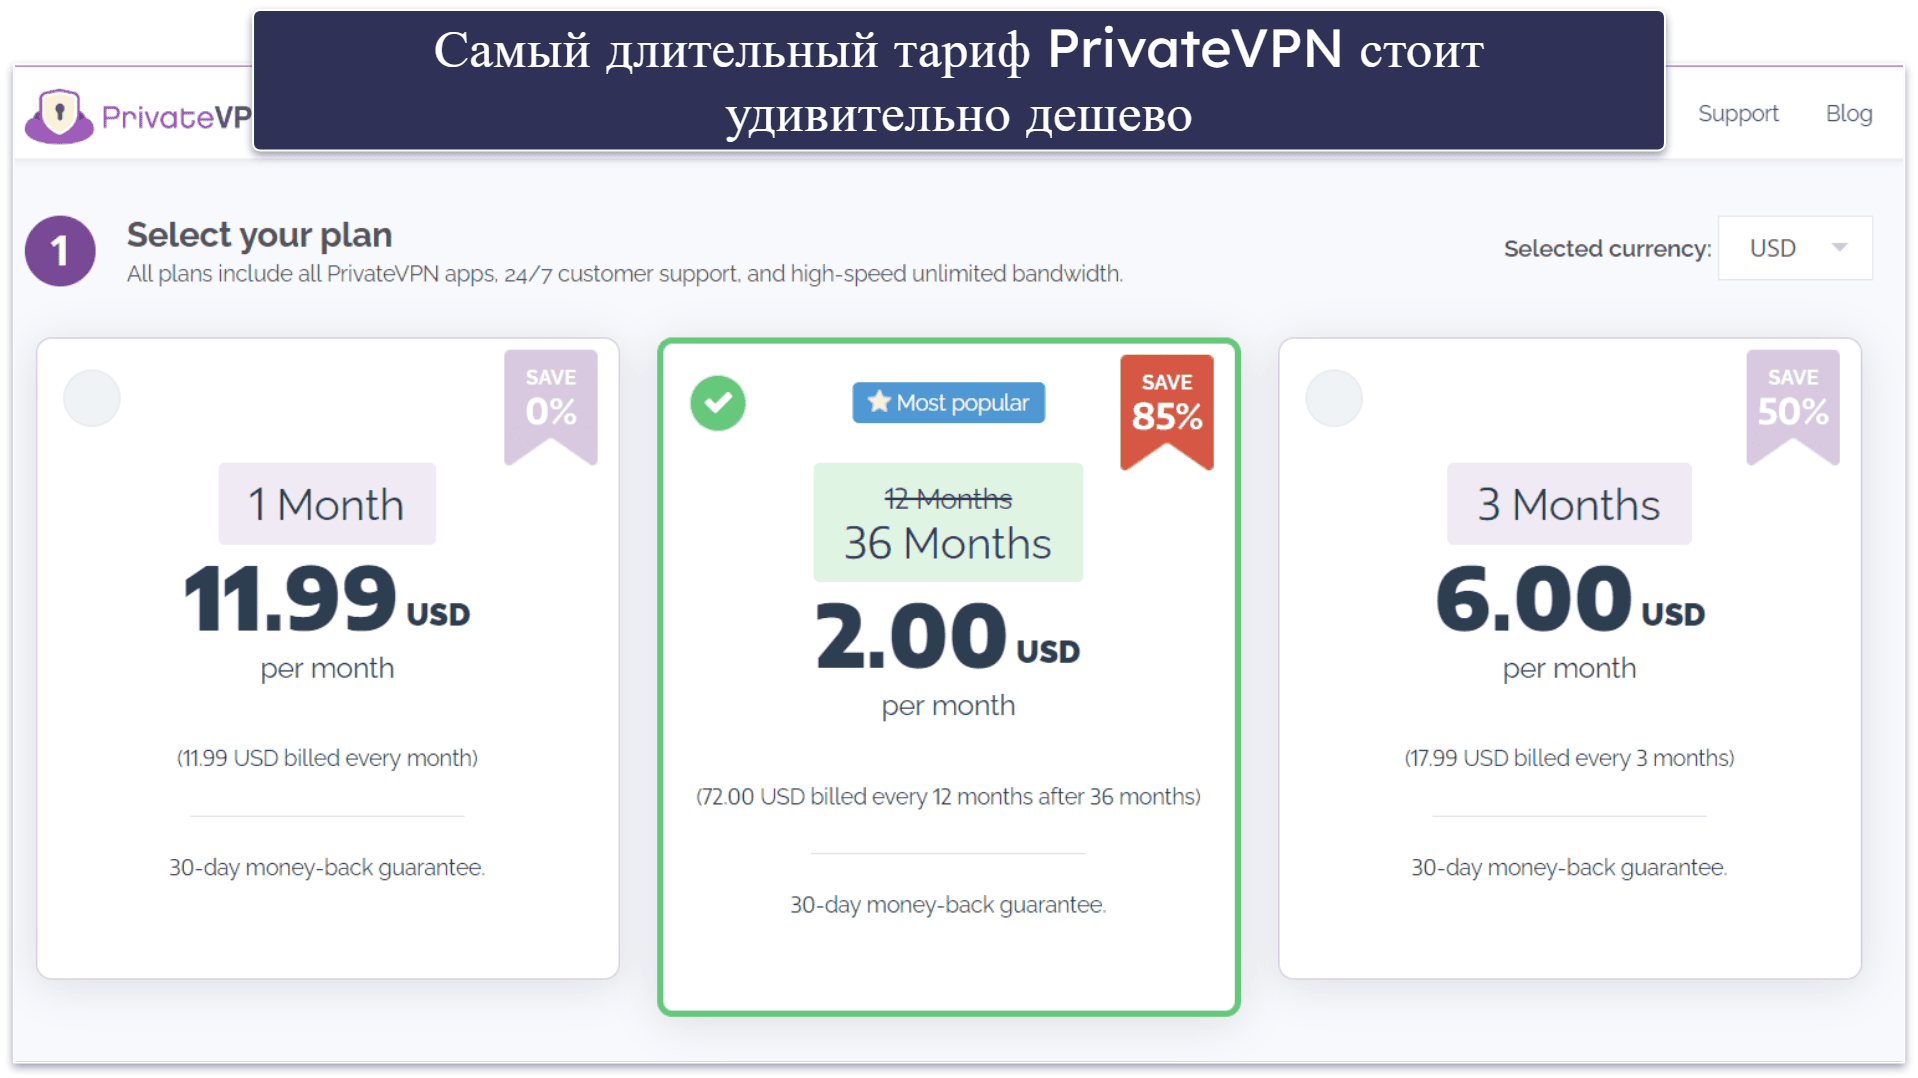 6. PrivateVPN — очень интуитивный (хороший для новых пользователей)